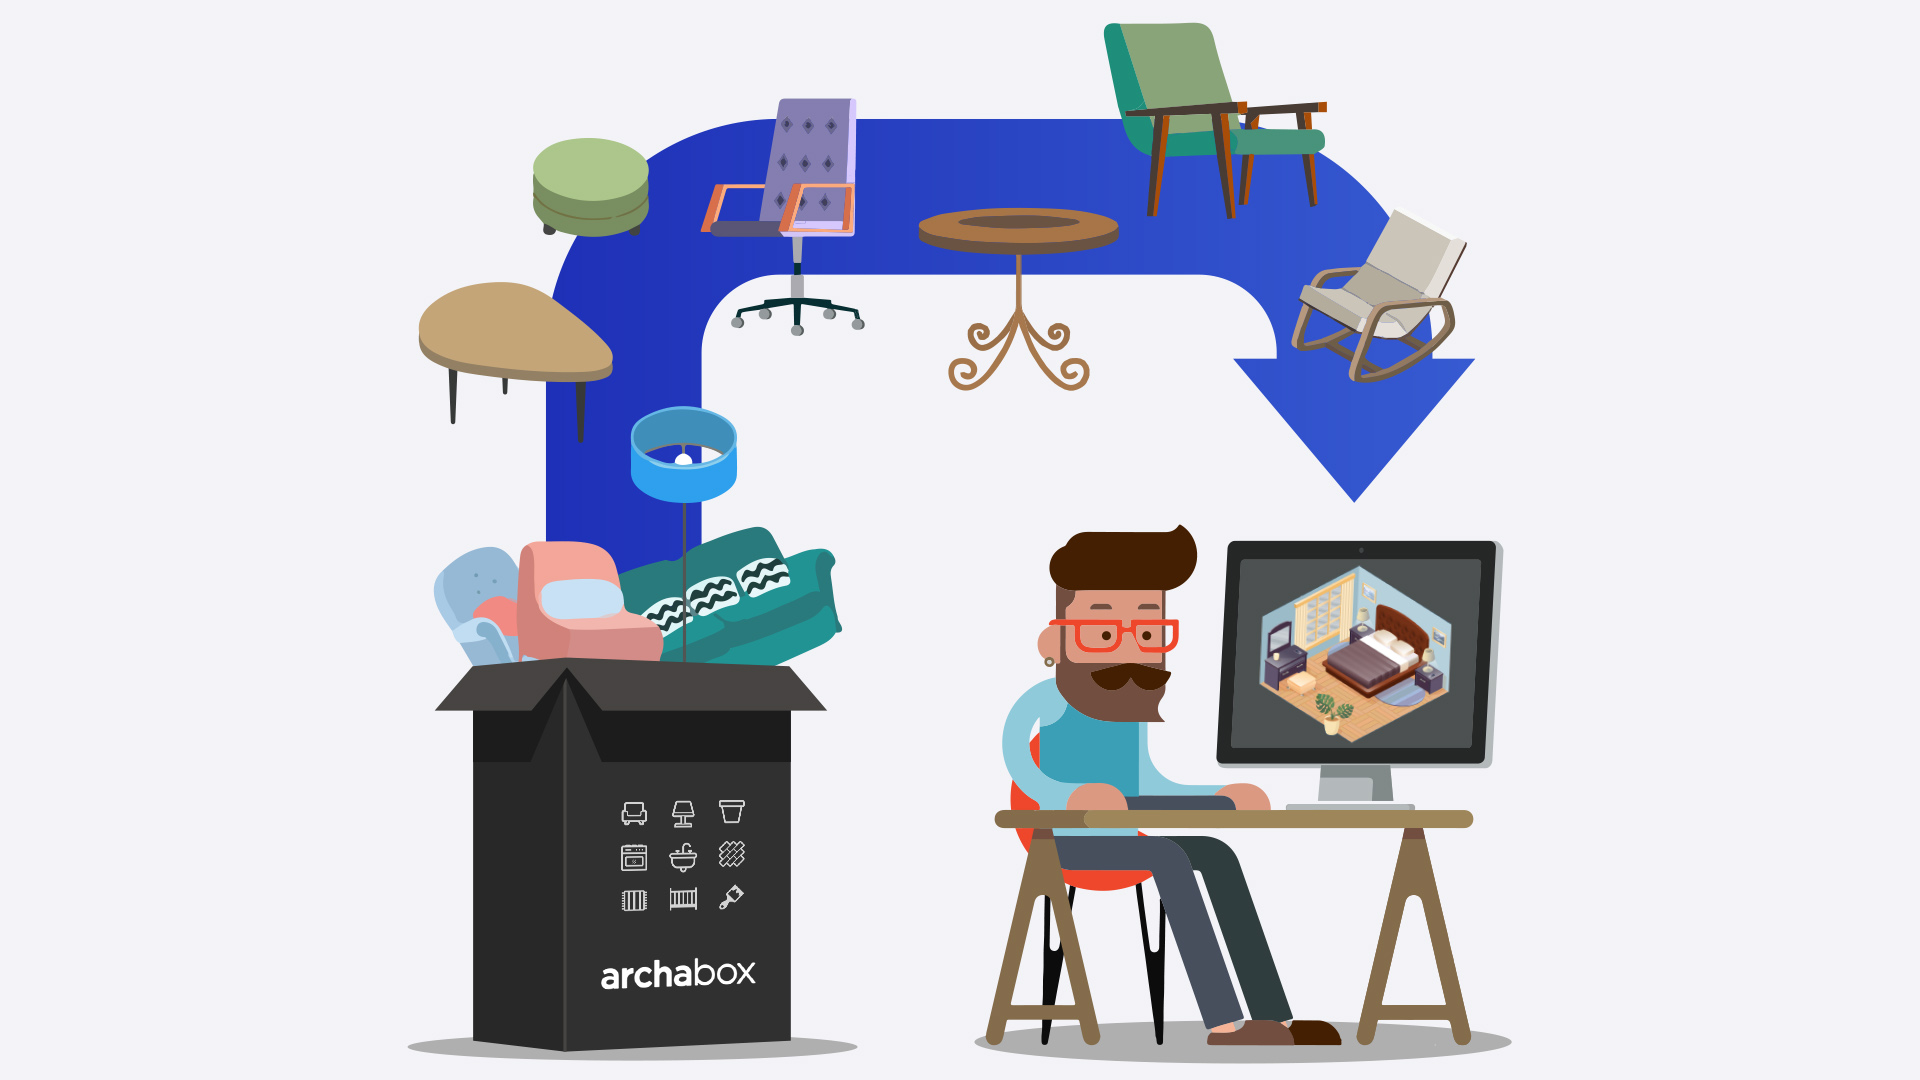 室内组件盒子 (Archabox)